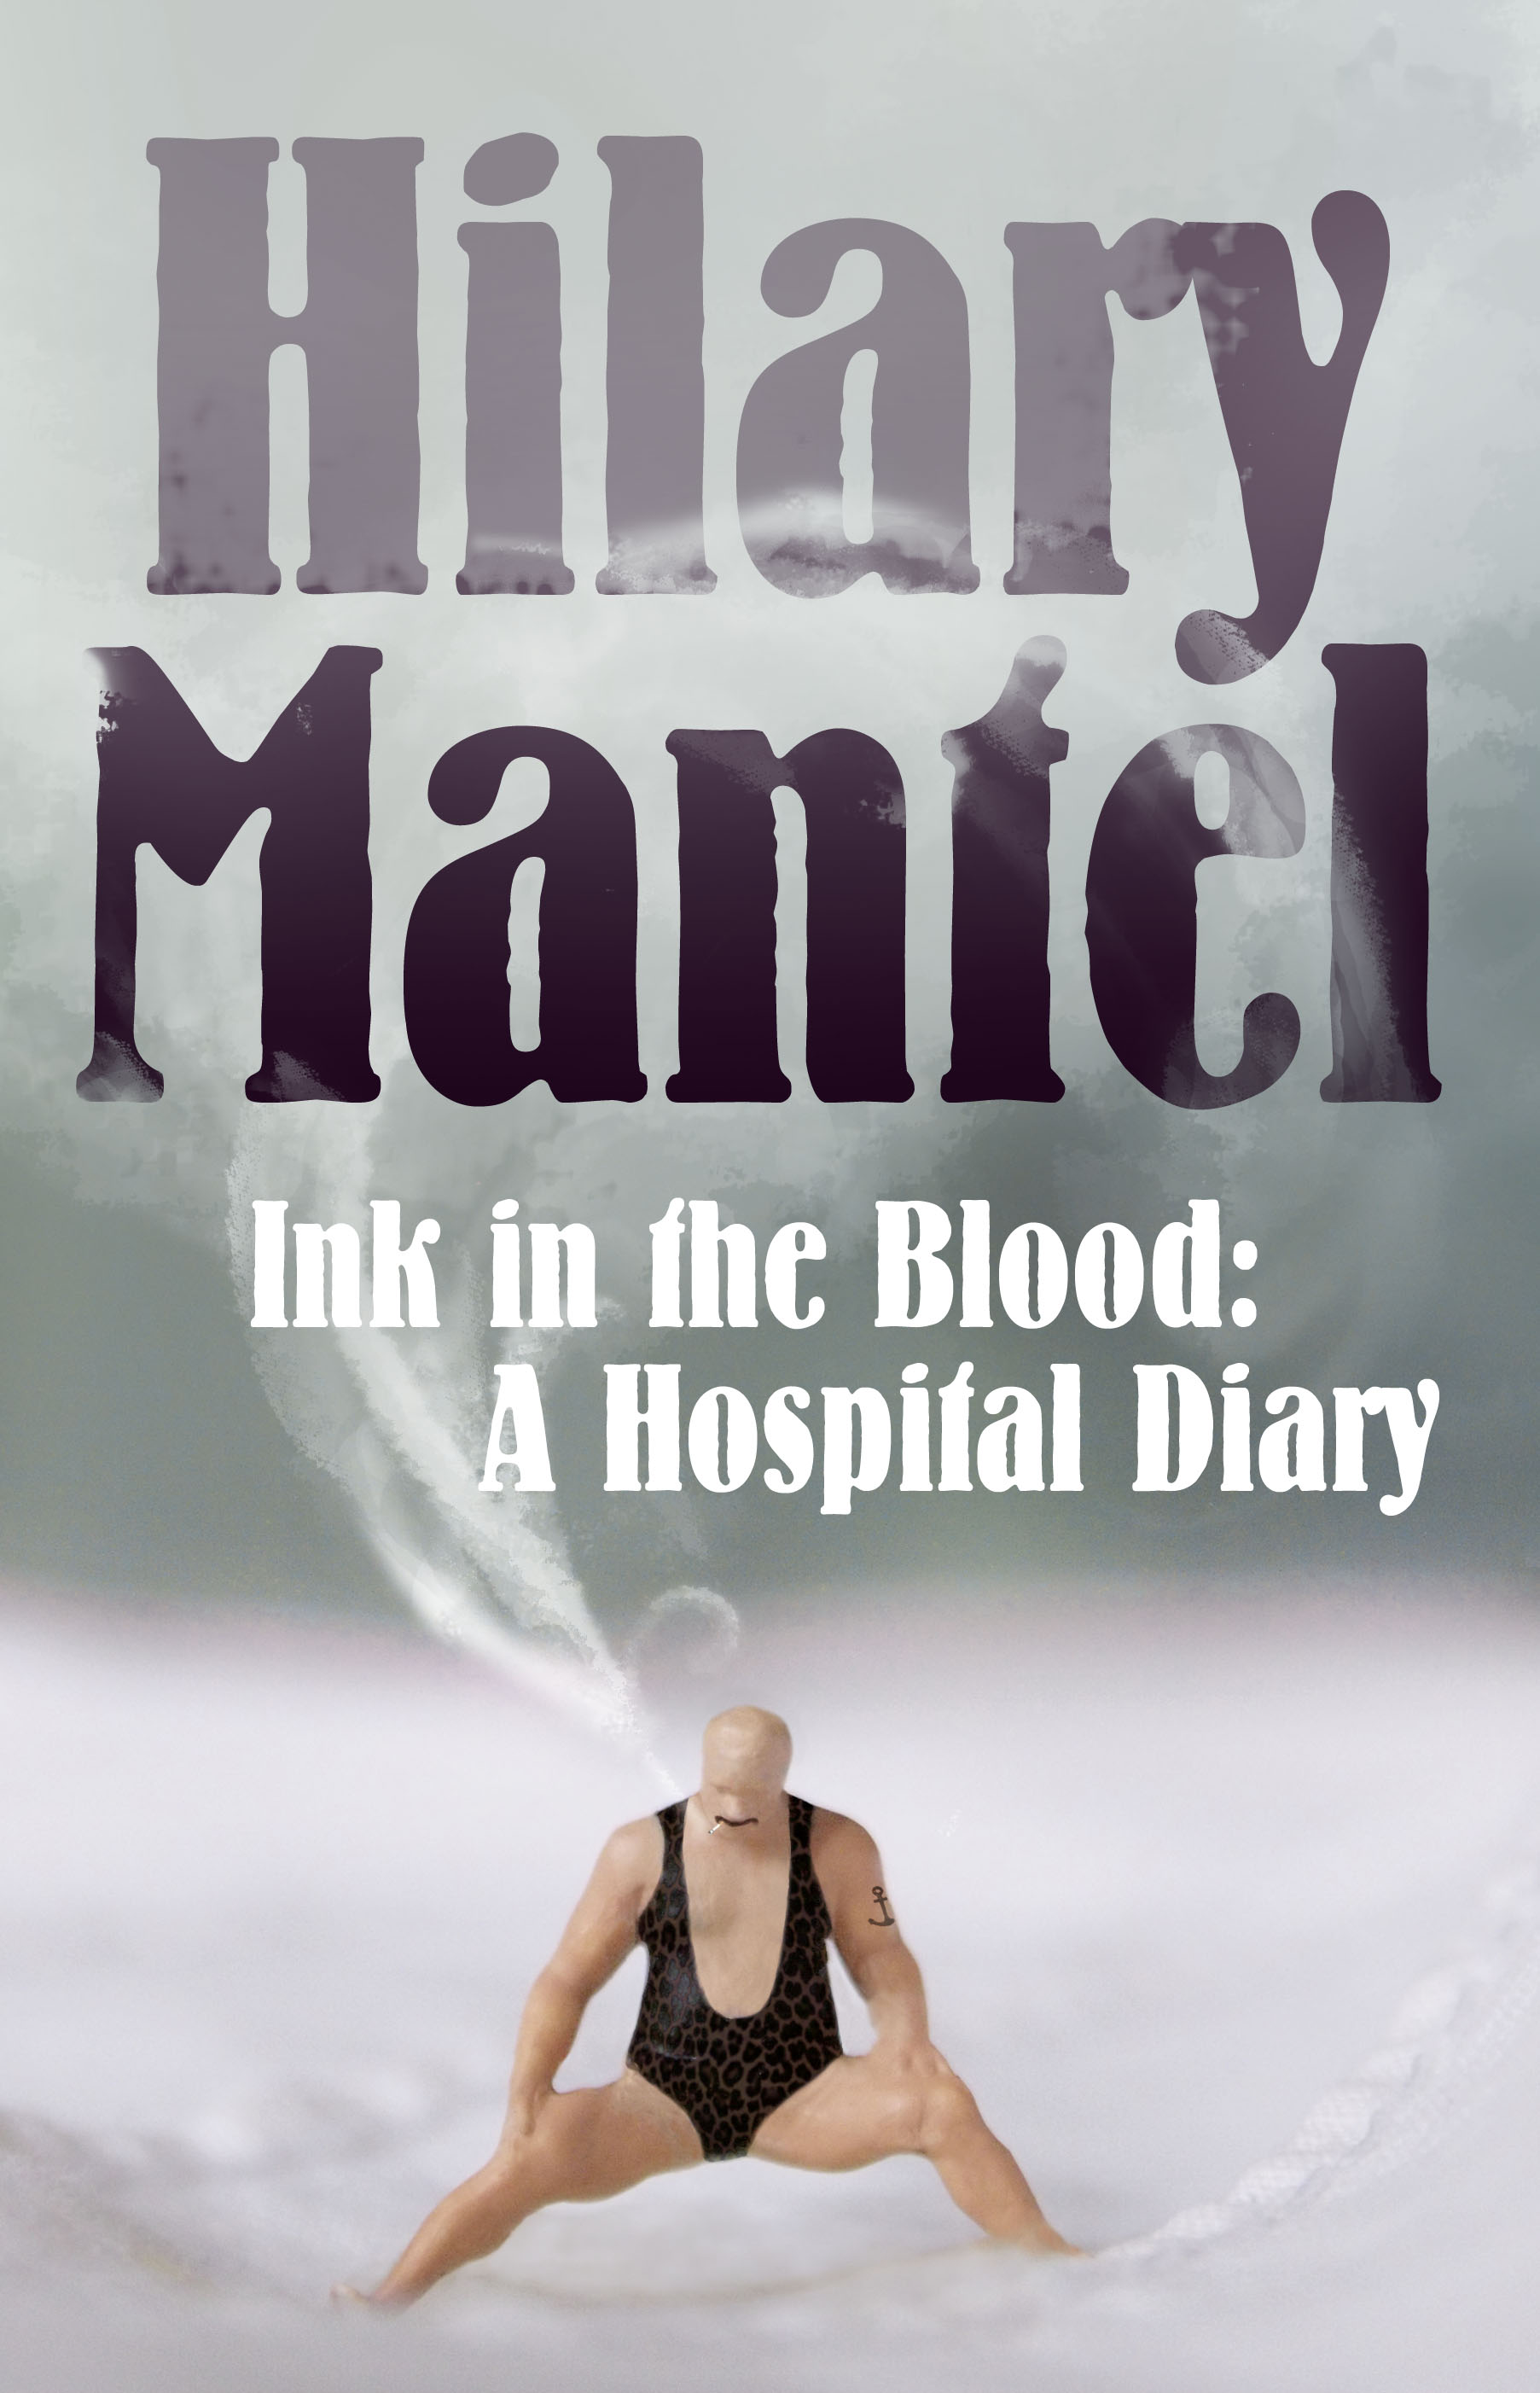 Книга Ink in the Blood: A Hospital Diary из серии , созданная Hilary Mantel, может относится к жанру Биографии и Мемуары. Стоимость электронной книги Ink in the Blood: A Hospital Diary с идентификатором 39766353 составляет 124.38 руб.